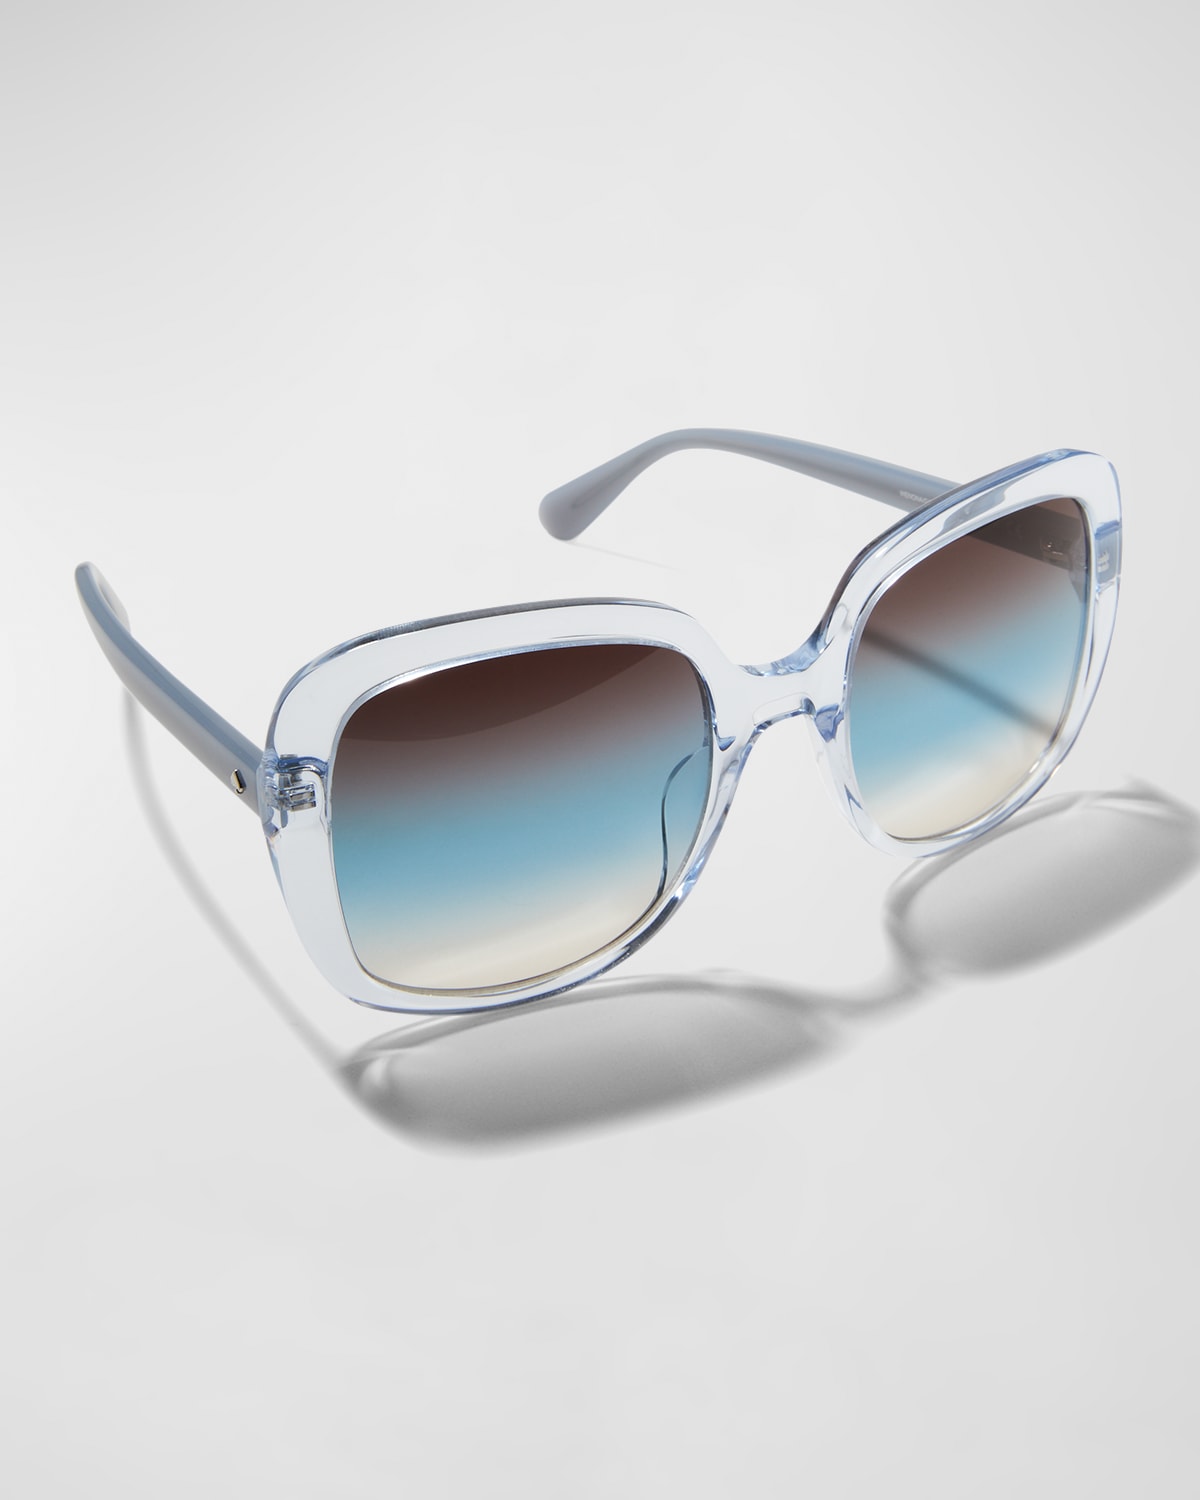 wenonags square acetate sunglasses